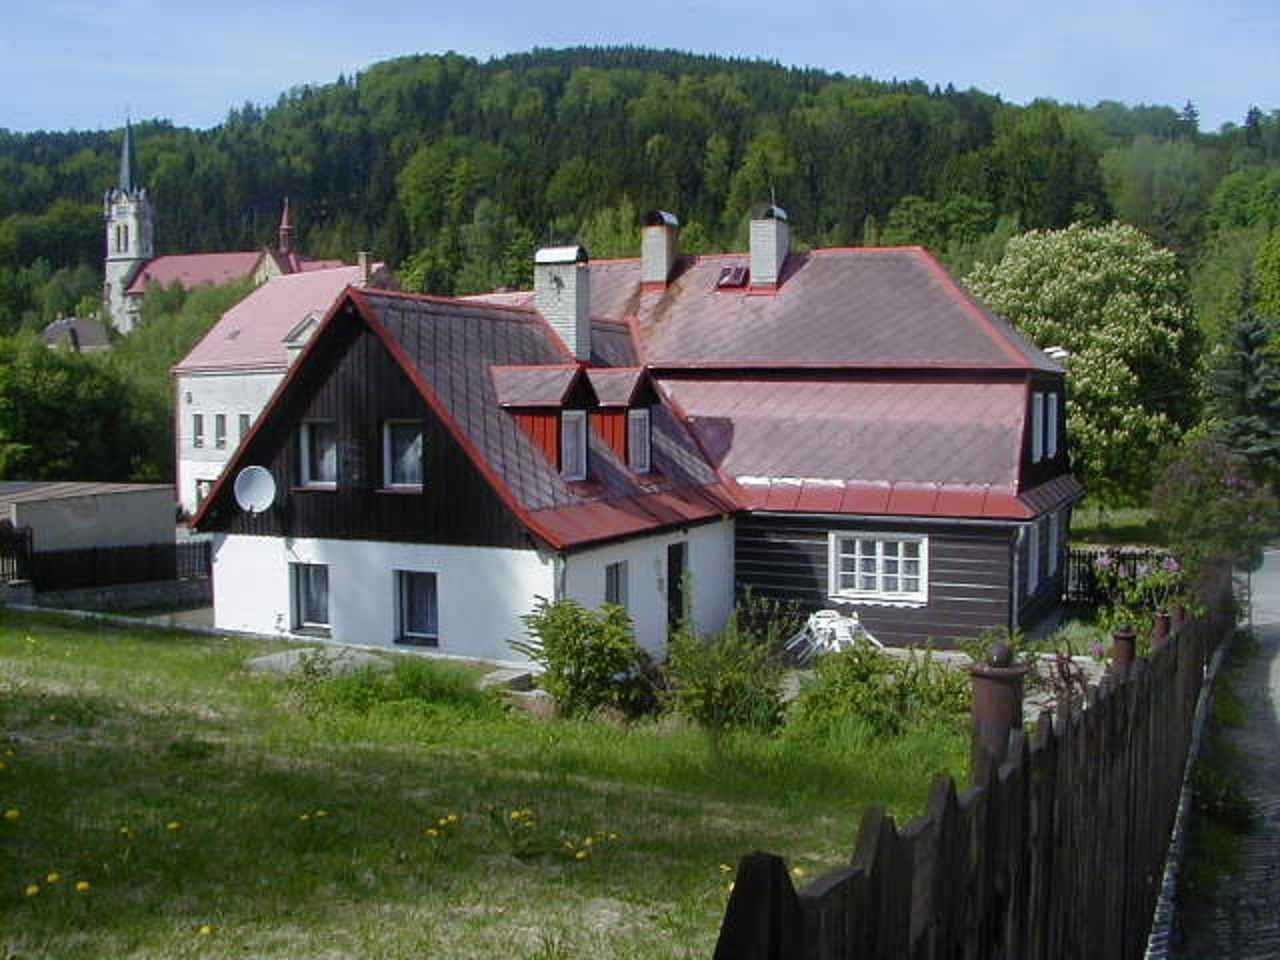 Ferienhaus mit Kaminofen in Hanglage Ferienhaus  NordbÃ¶hmen